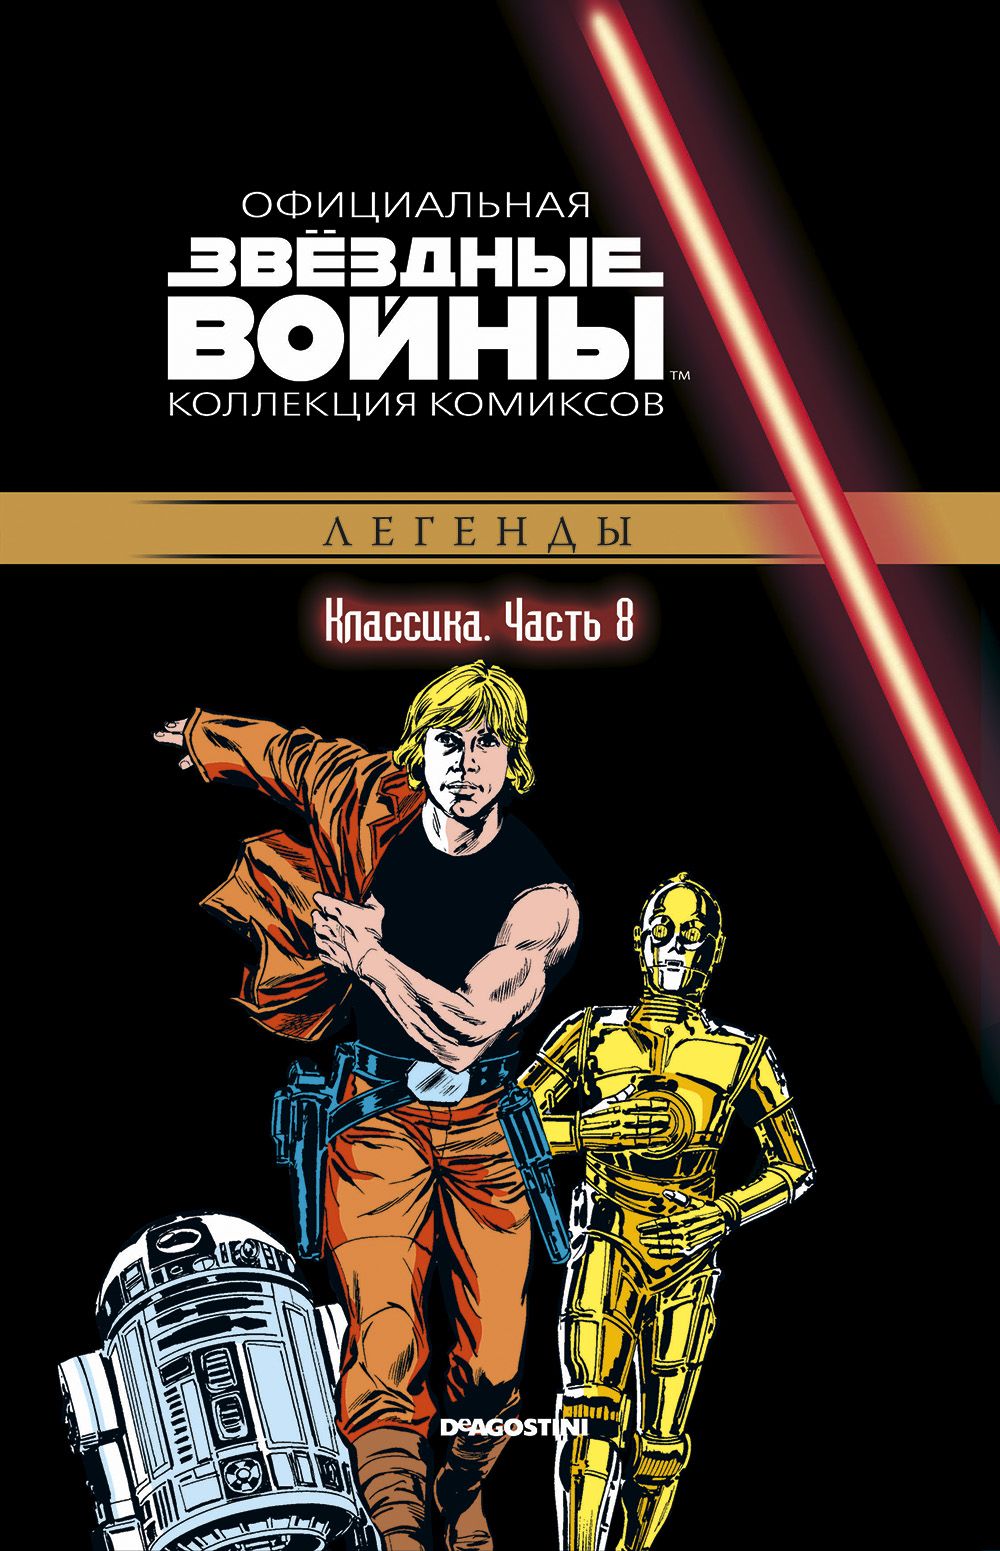 Комикс на русском языке «Звёздные войны. Официальная коллекция комиксов. Том 8. Классика. Часть 8»